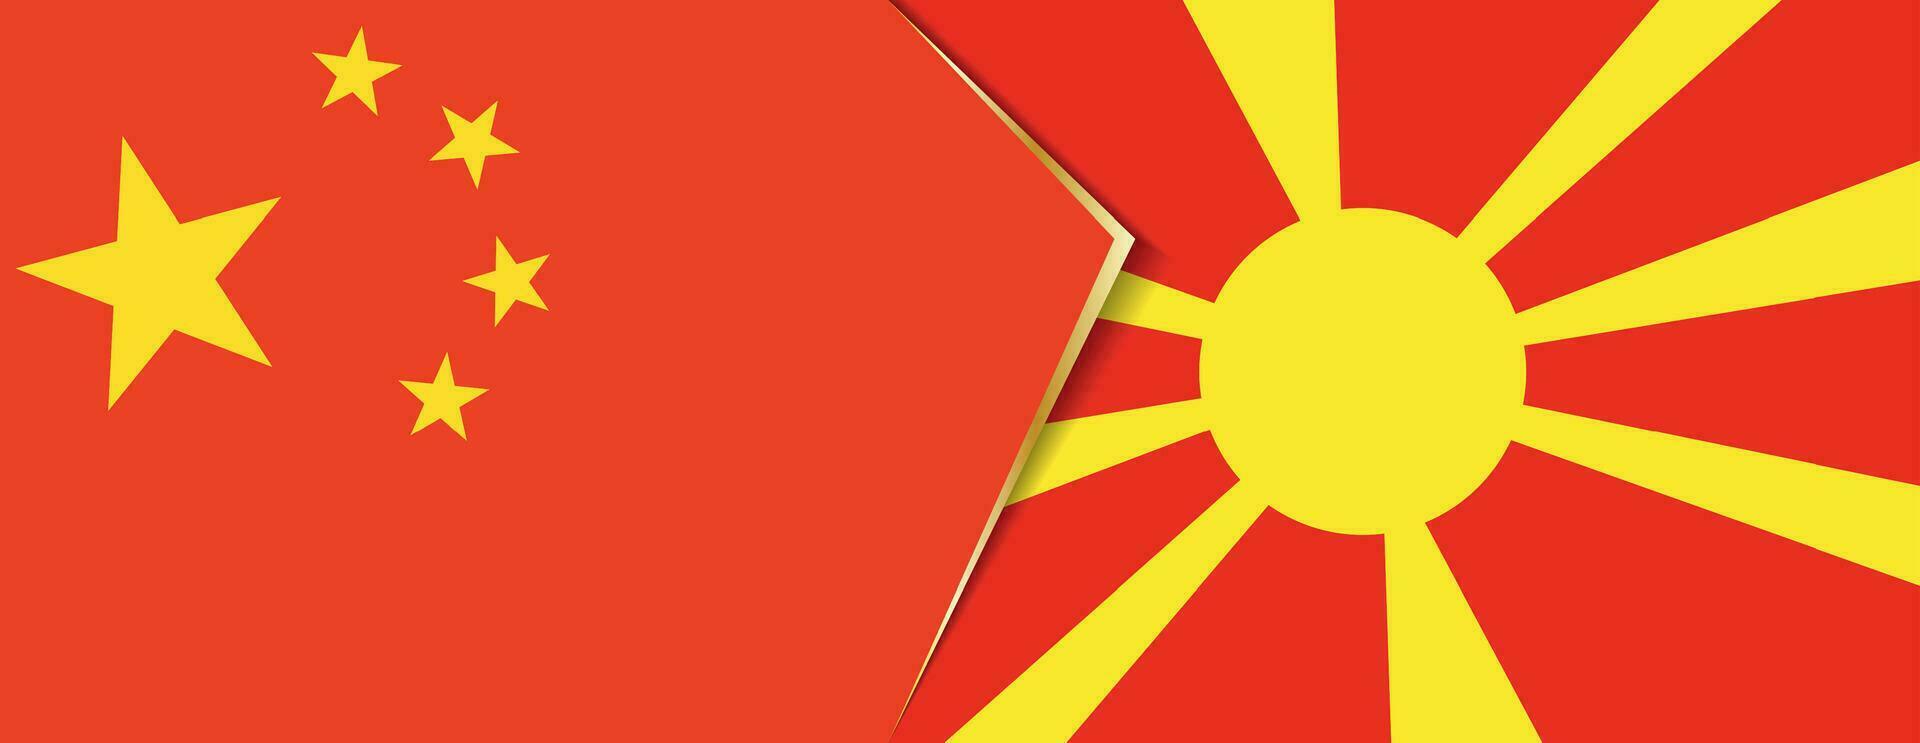 Kina och macedonia flaggor, två vektor flaggor.